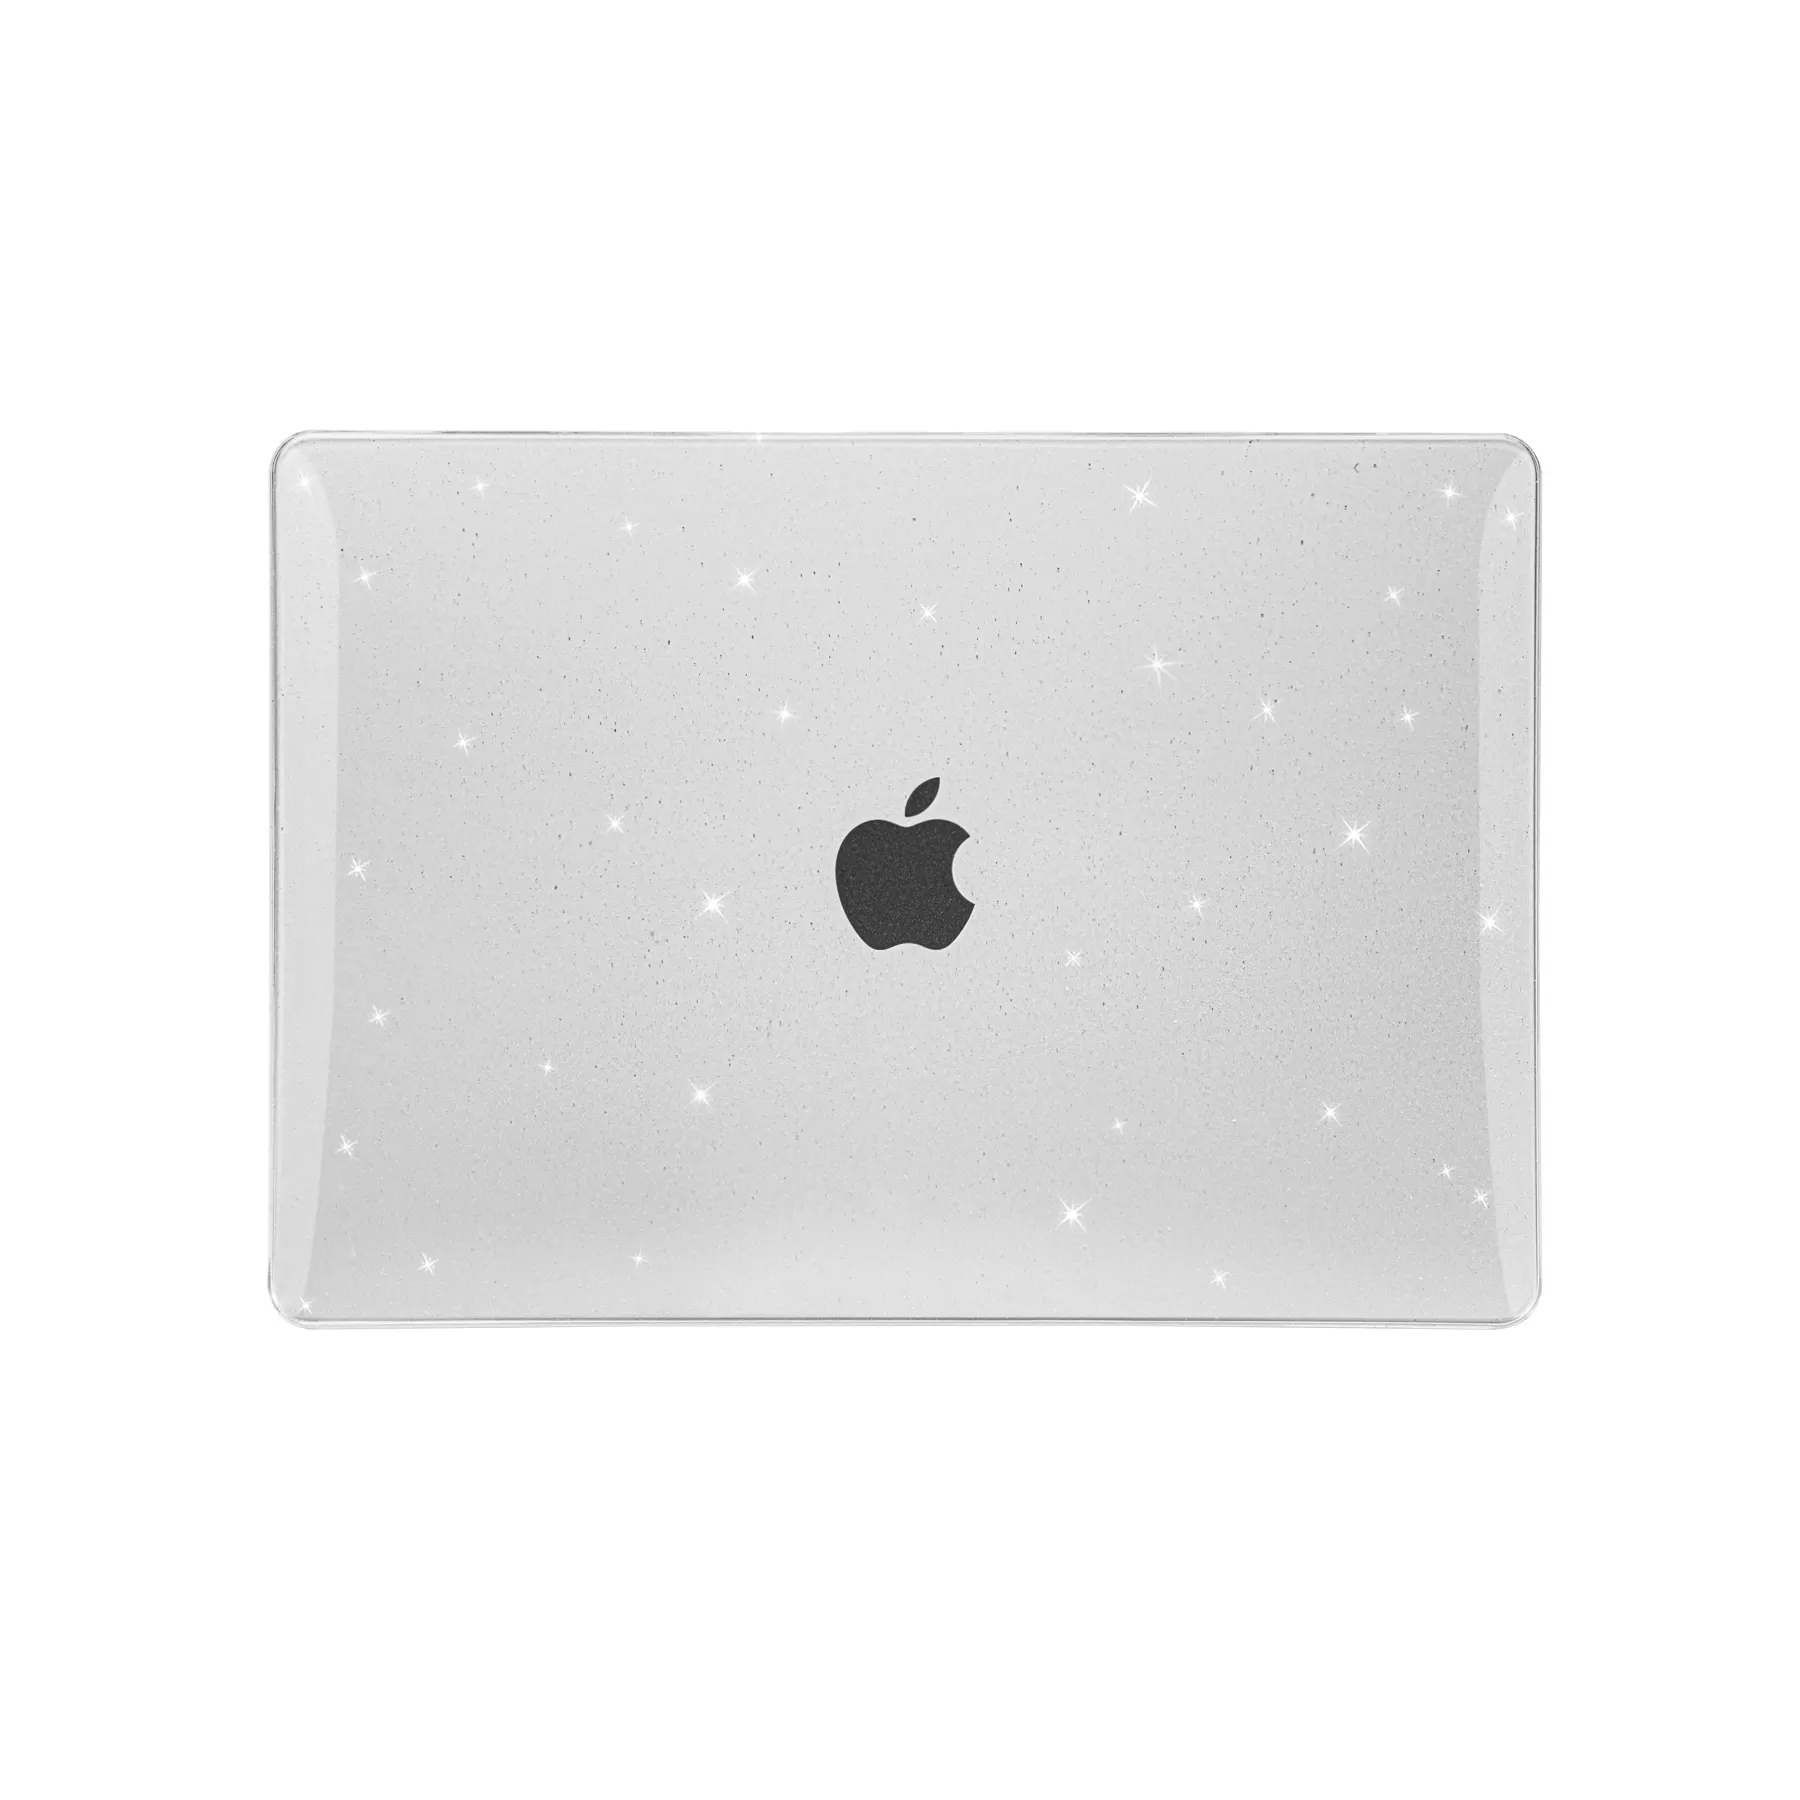 Yeni laptop Macbook çantası Pro hava 13 "16" boyutu optimize hava akımı ve yıldızlı gökyüzü tasarımı ile laptop case eklendi